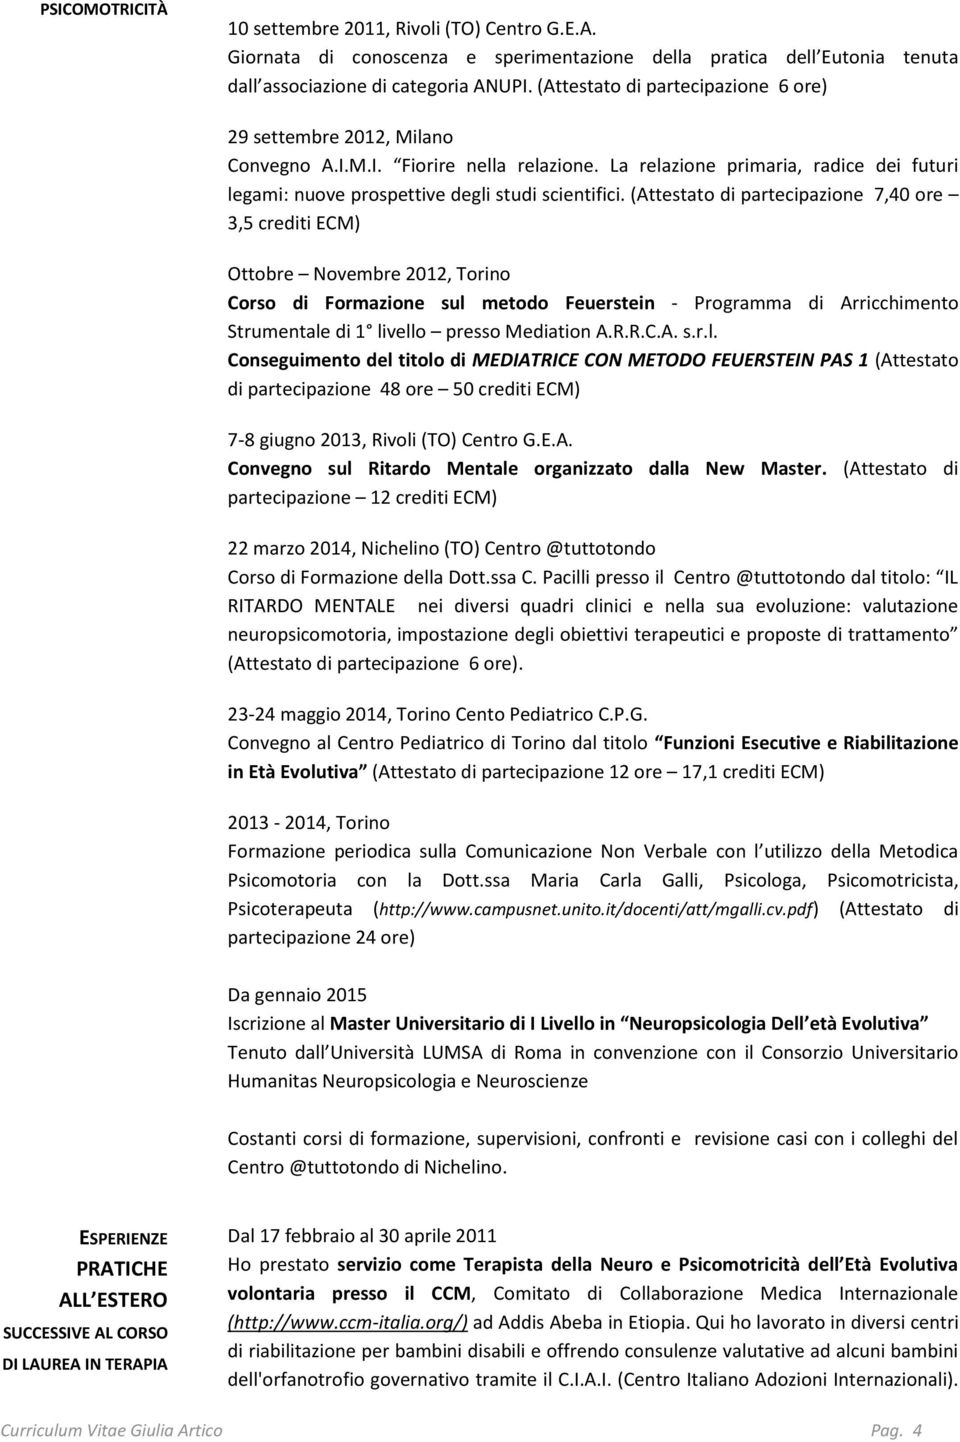 (Attestato di partecipazione 7,40 ore 3,5 crediti ECM) Ottobre Novembre 2012, Torino Corso di Formazione sul metodo Feuerstein - Programma di Arricchimento Strumentale di 1 livello presso Mediation A.